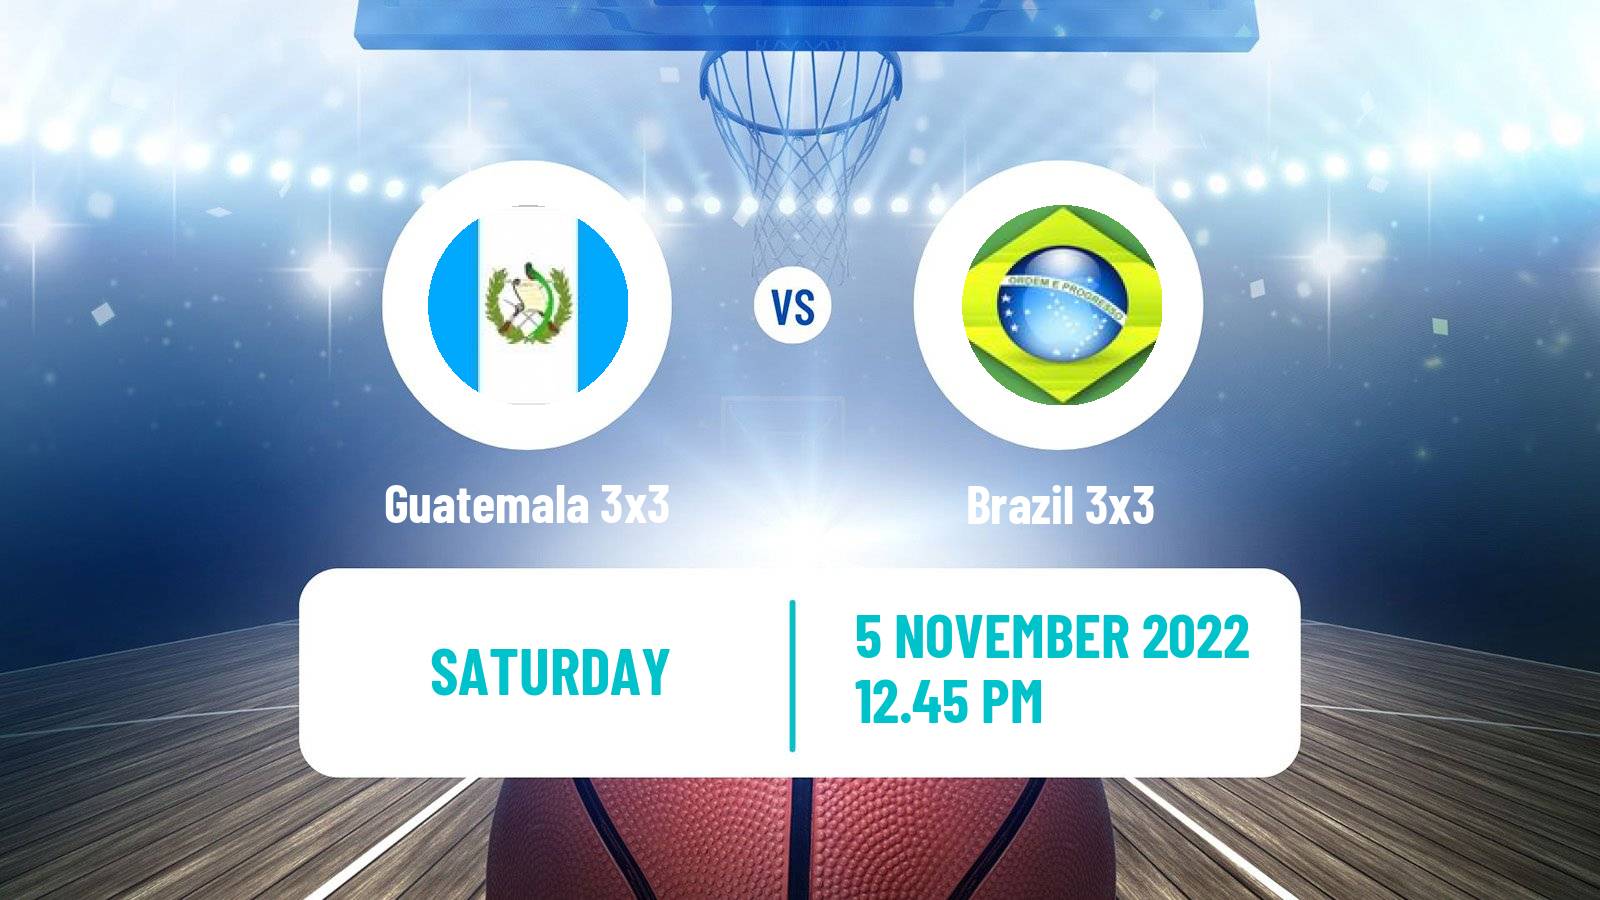 Basketball Americup 3x3 Guatemala 3x3 - Brazil 3x3